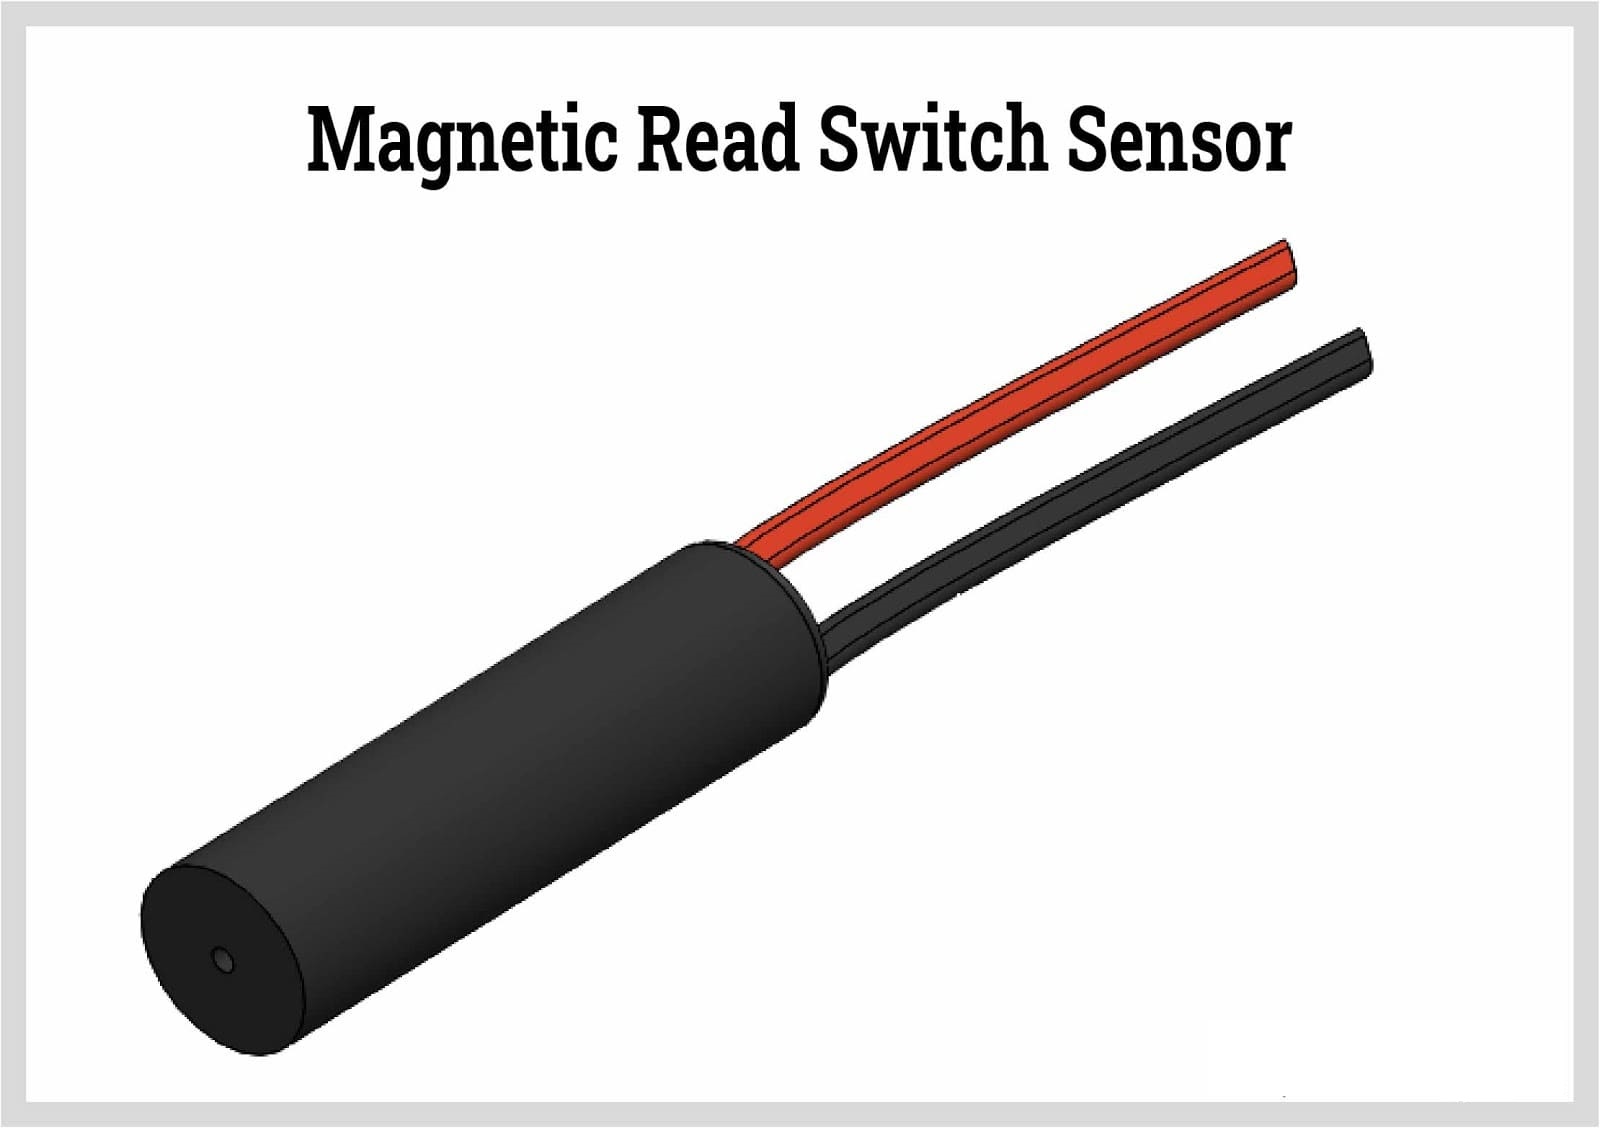 imagnethi-reed-switch-sensor